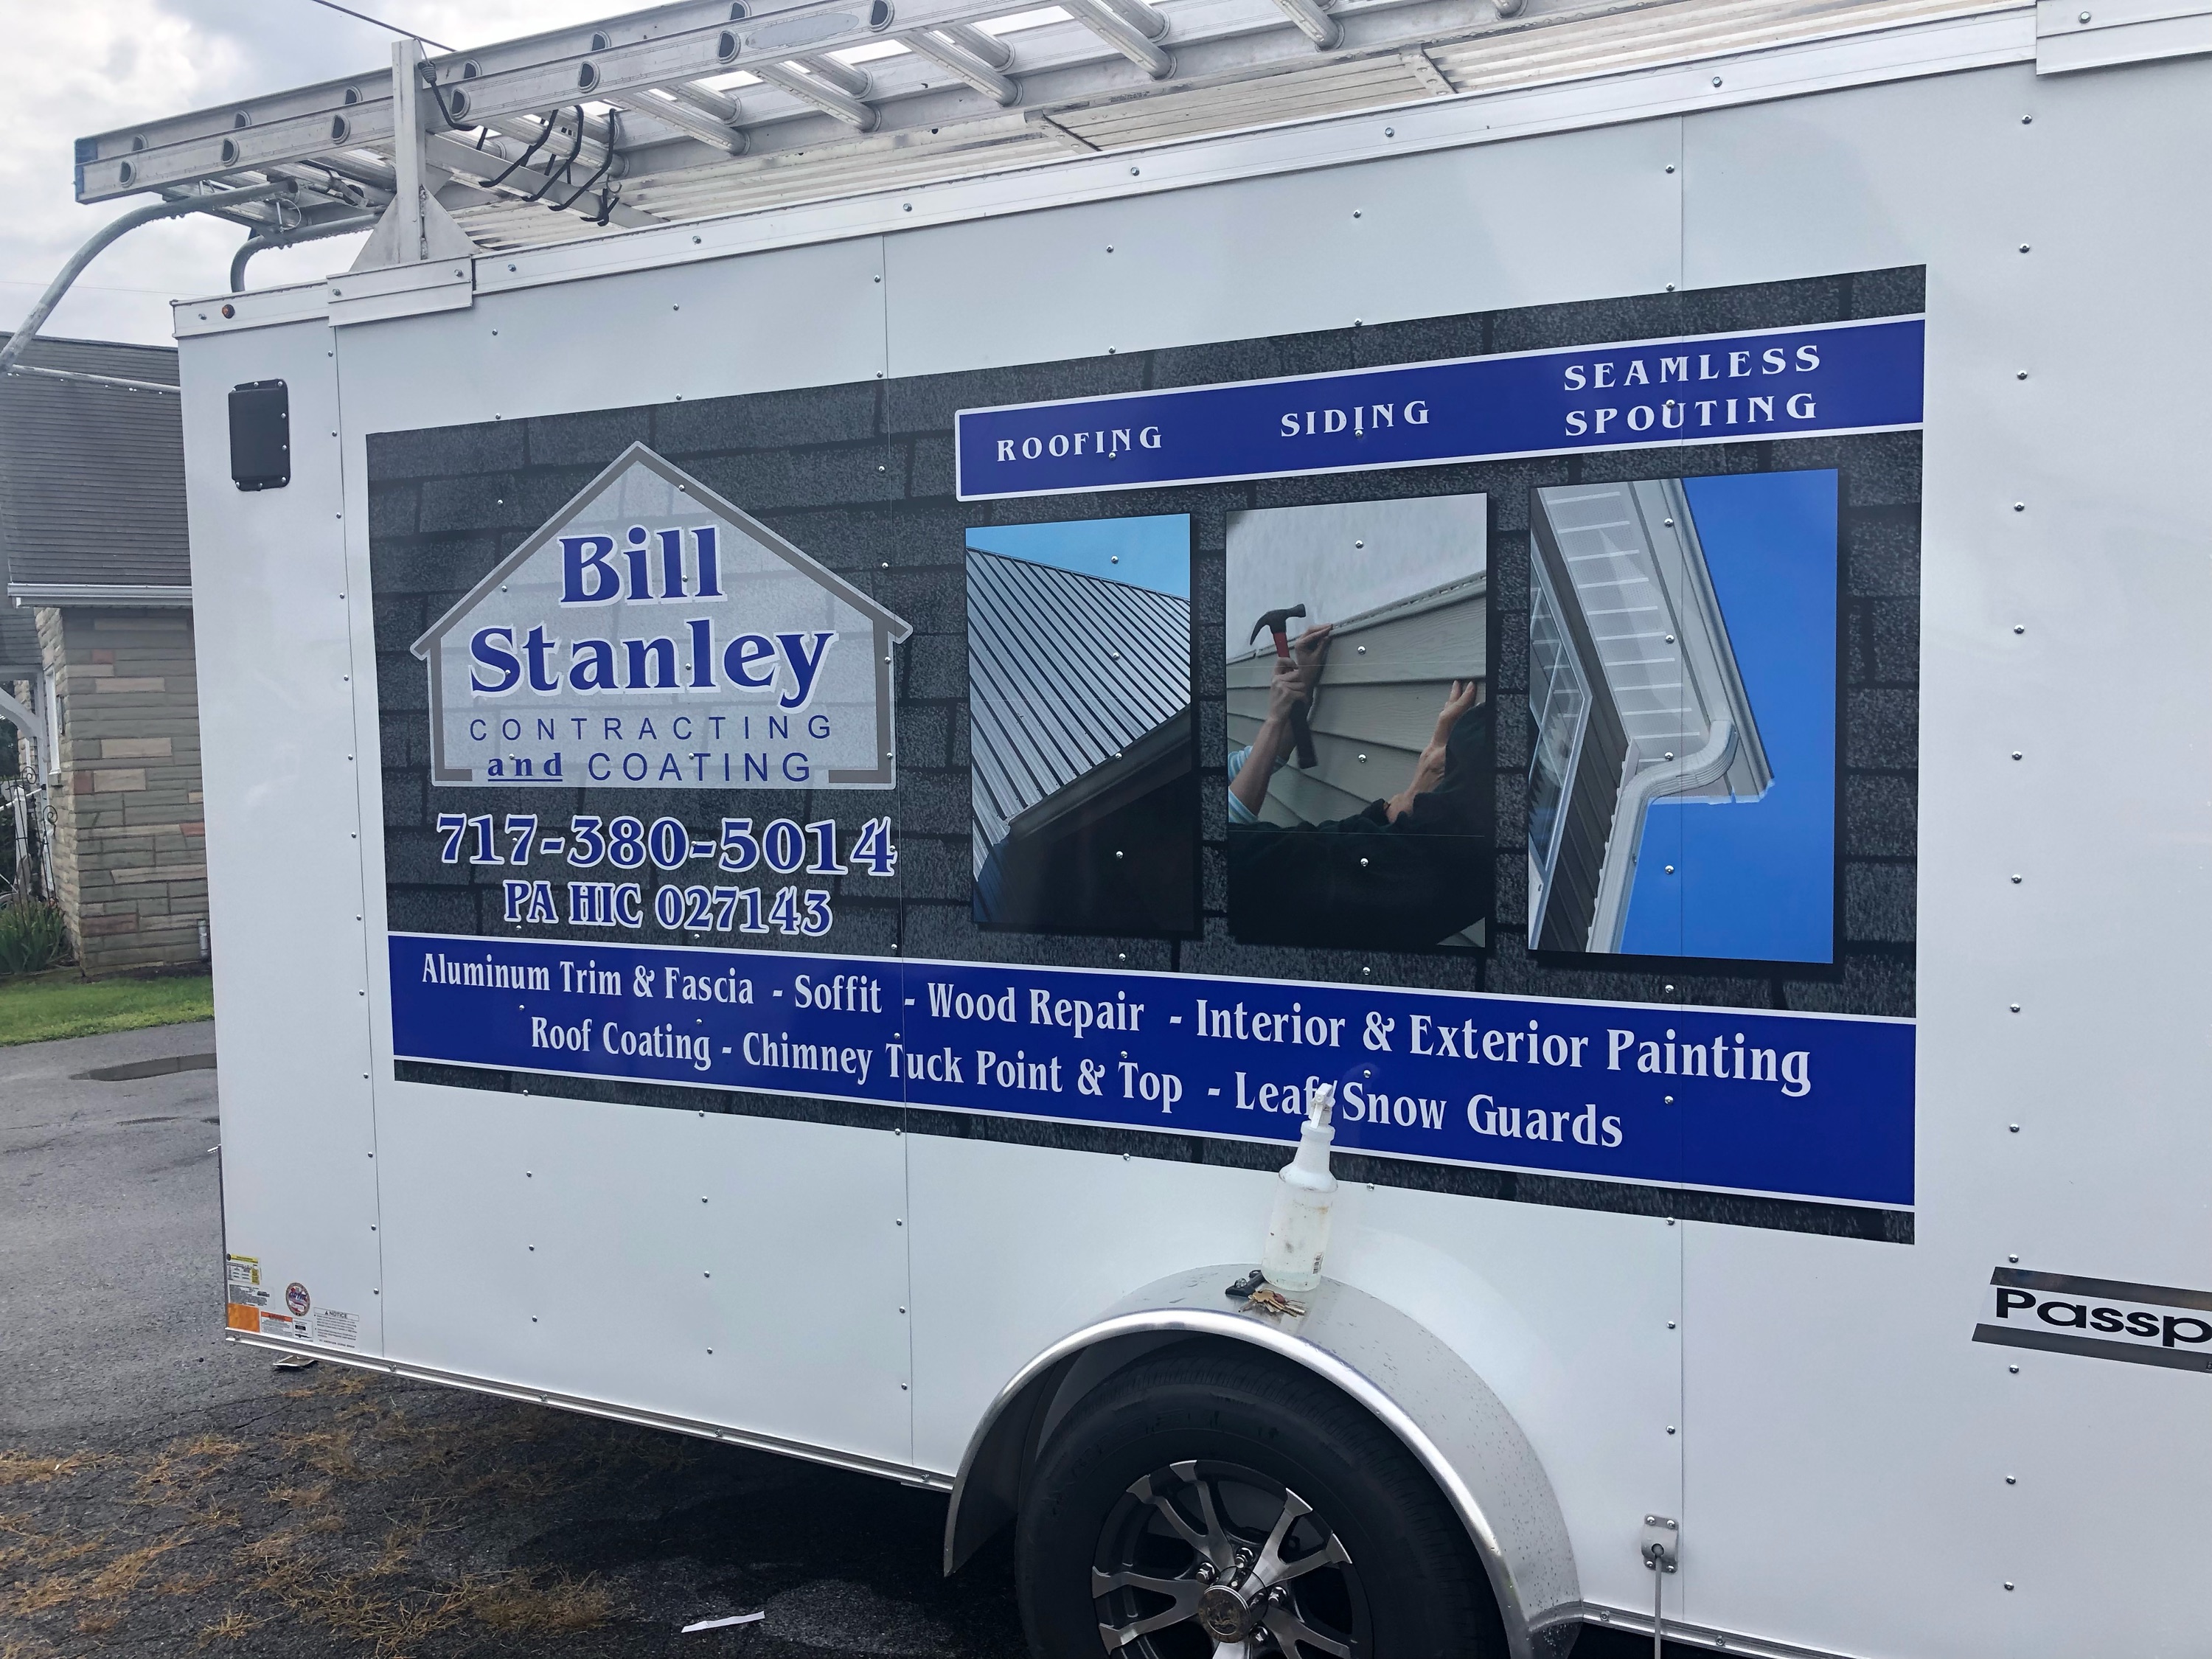 Bill Stanley Contractor & Coating Logo